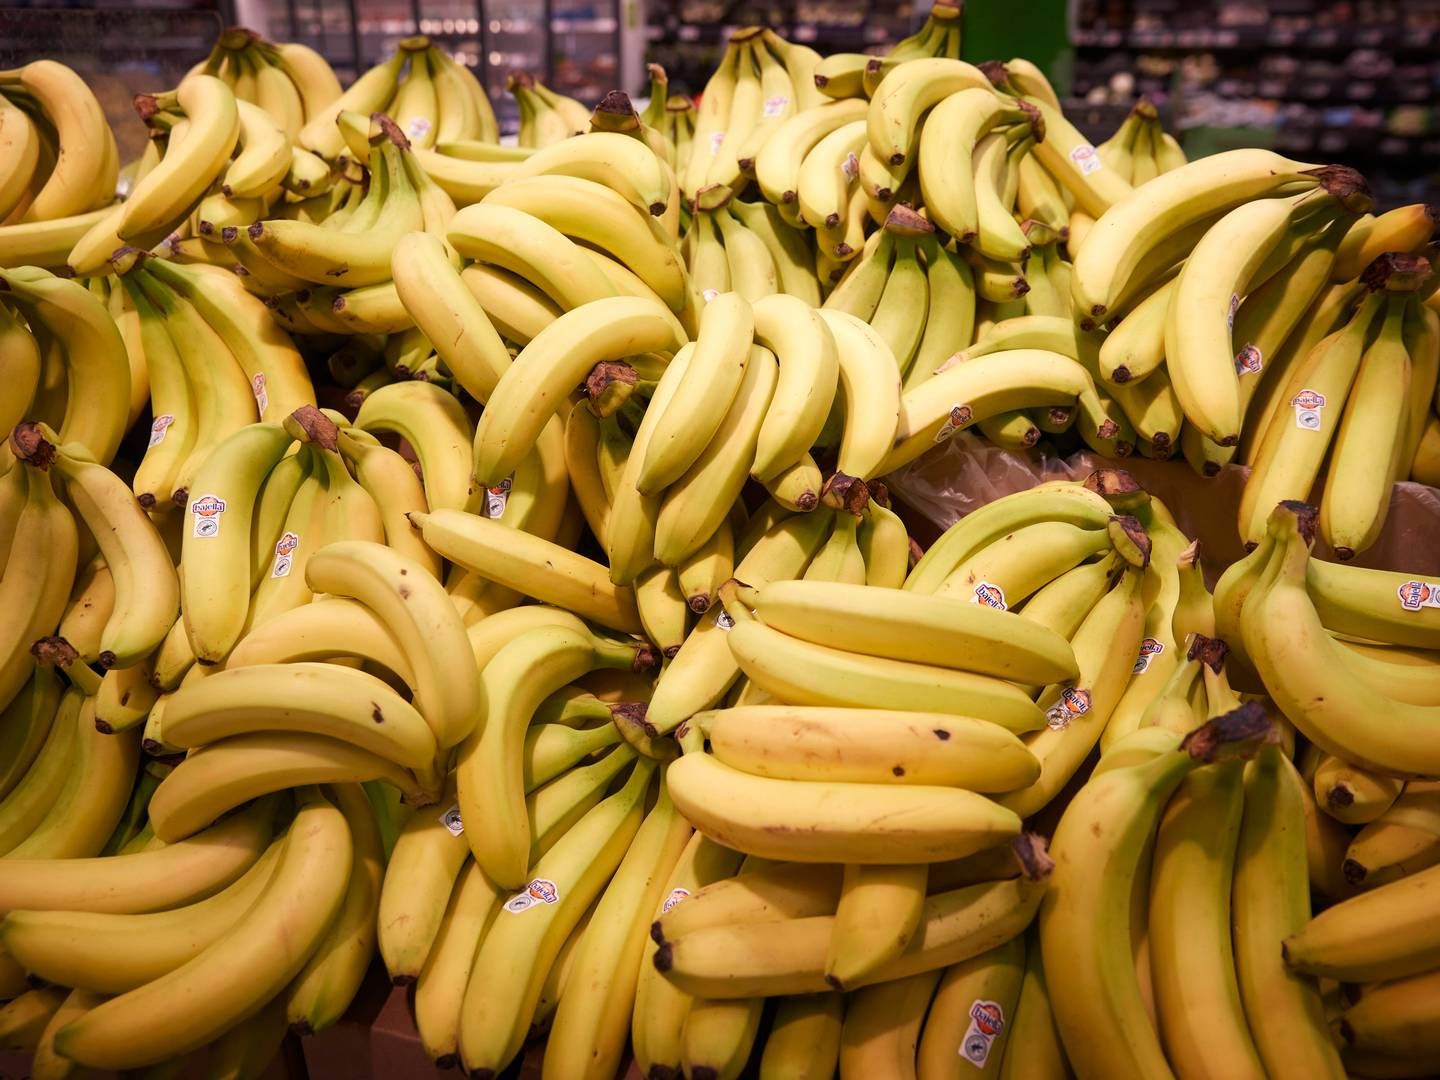 Èt af de eksempler er bananer fra Filipinerne, som ikke bliver brune som konsekvens af brugen af NGT, og derved kan man reducere fødevarespild og i forlængelse CO2-udledning. | Foto: Jens Dresling